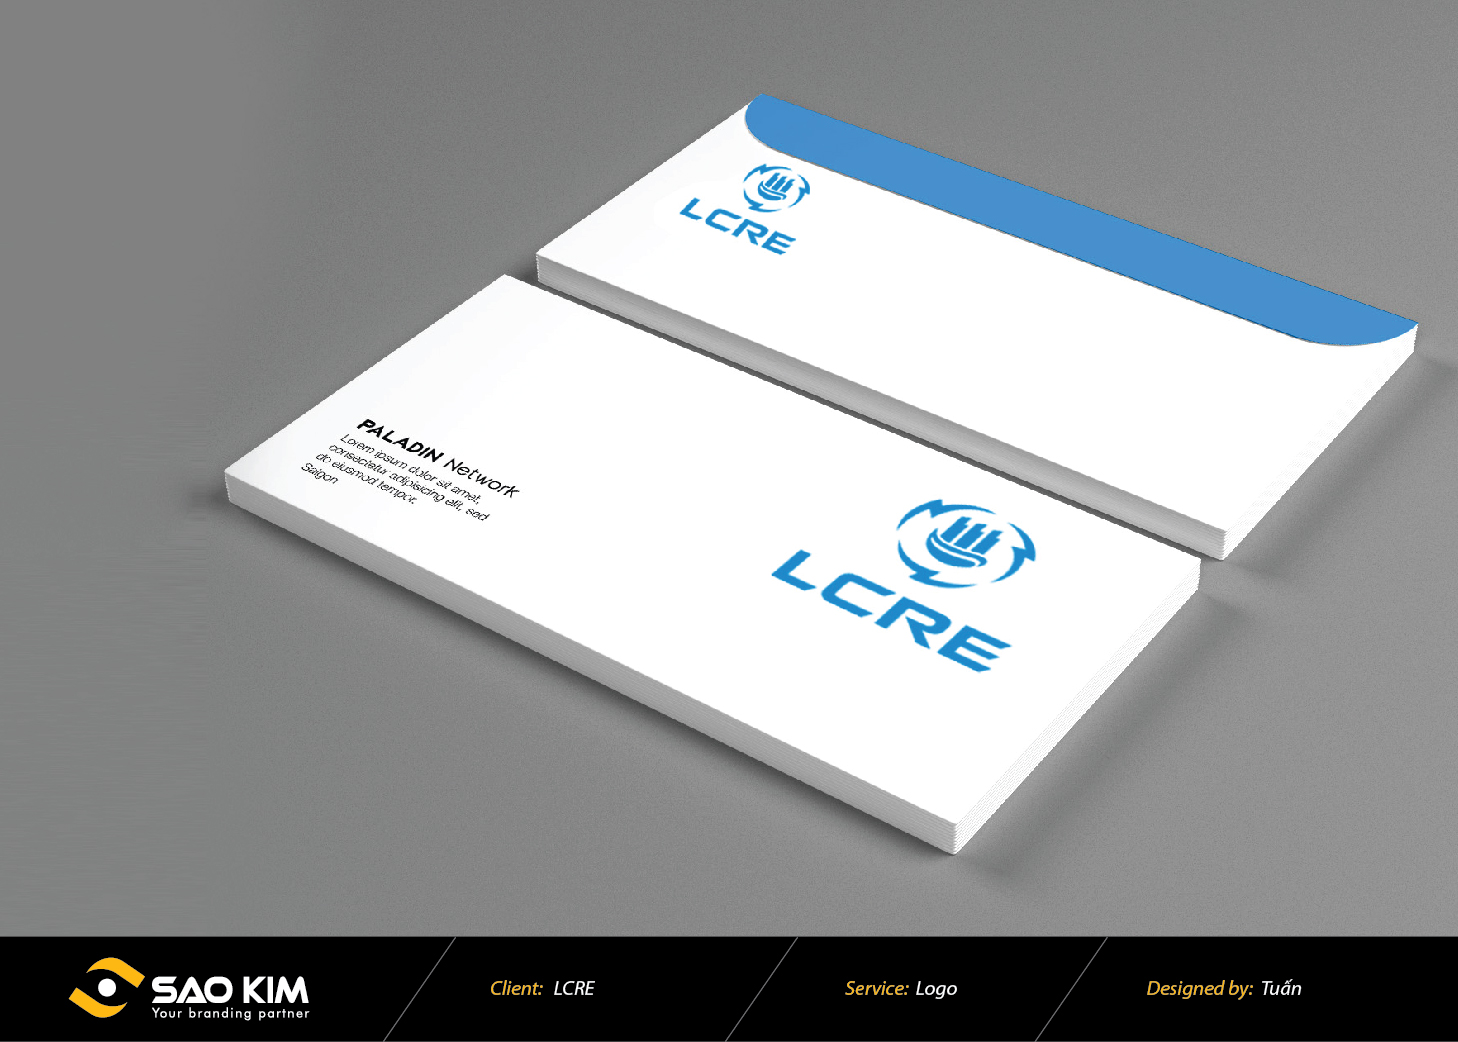 Thiết kế logo LCRE tại Lào Cai